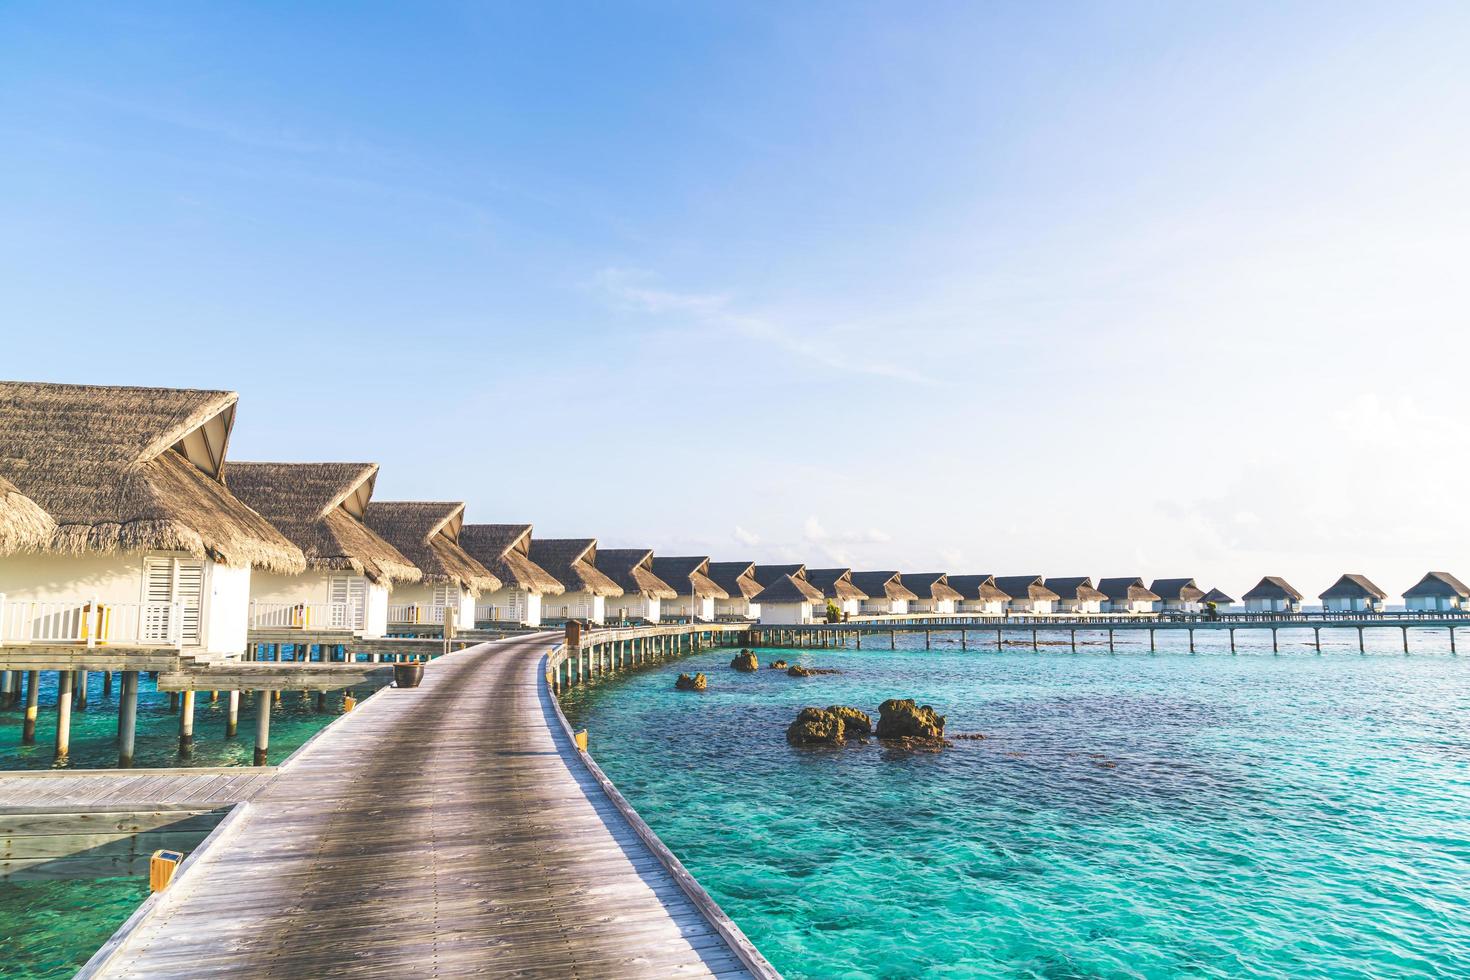 vackra tropiska Maldiverna hotell och ö med strand och hav foto